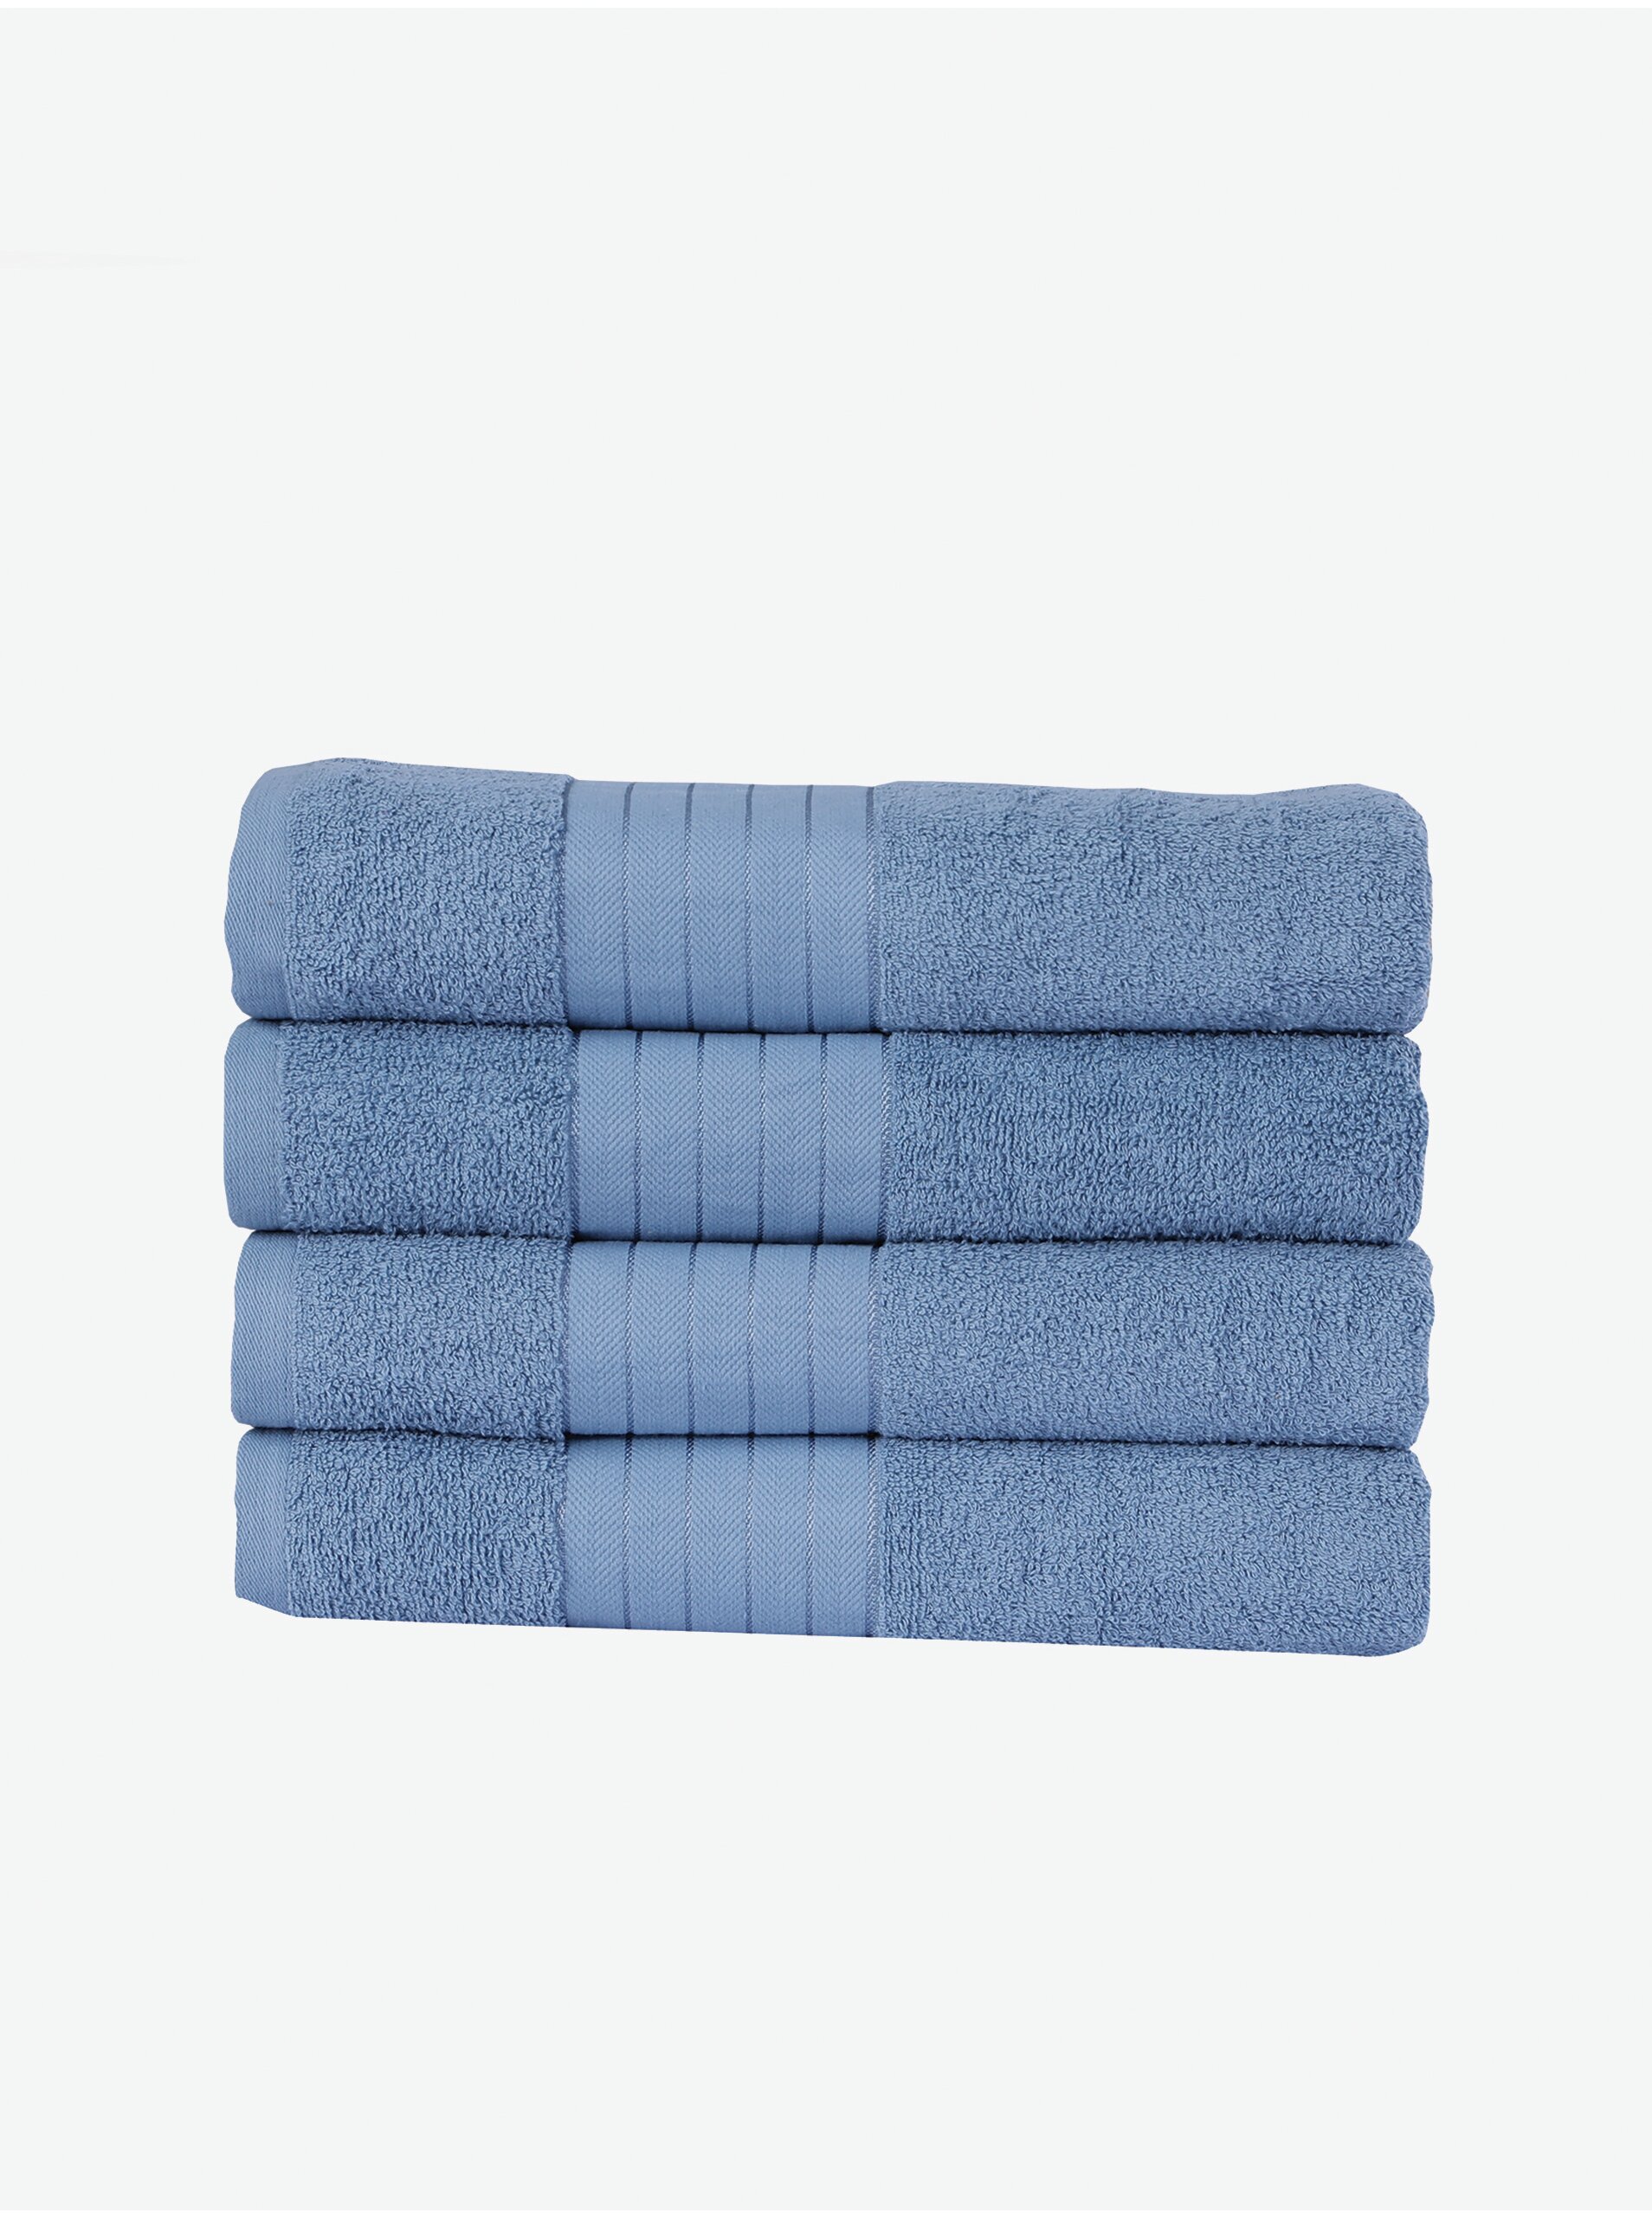 Lacno 50 x 100 cm - Sada štyroch modrých uterákov Good Morning